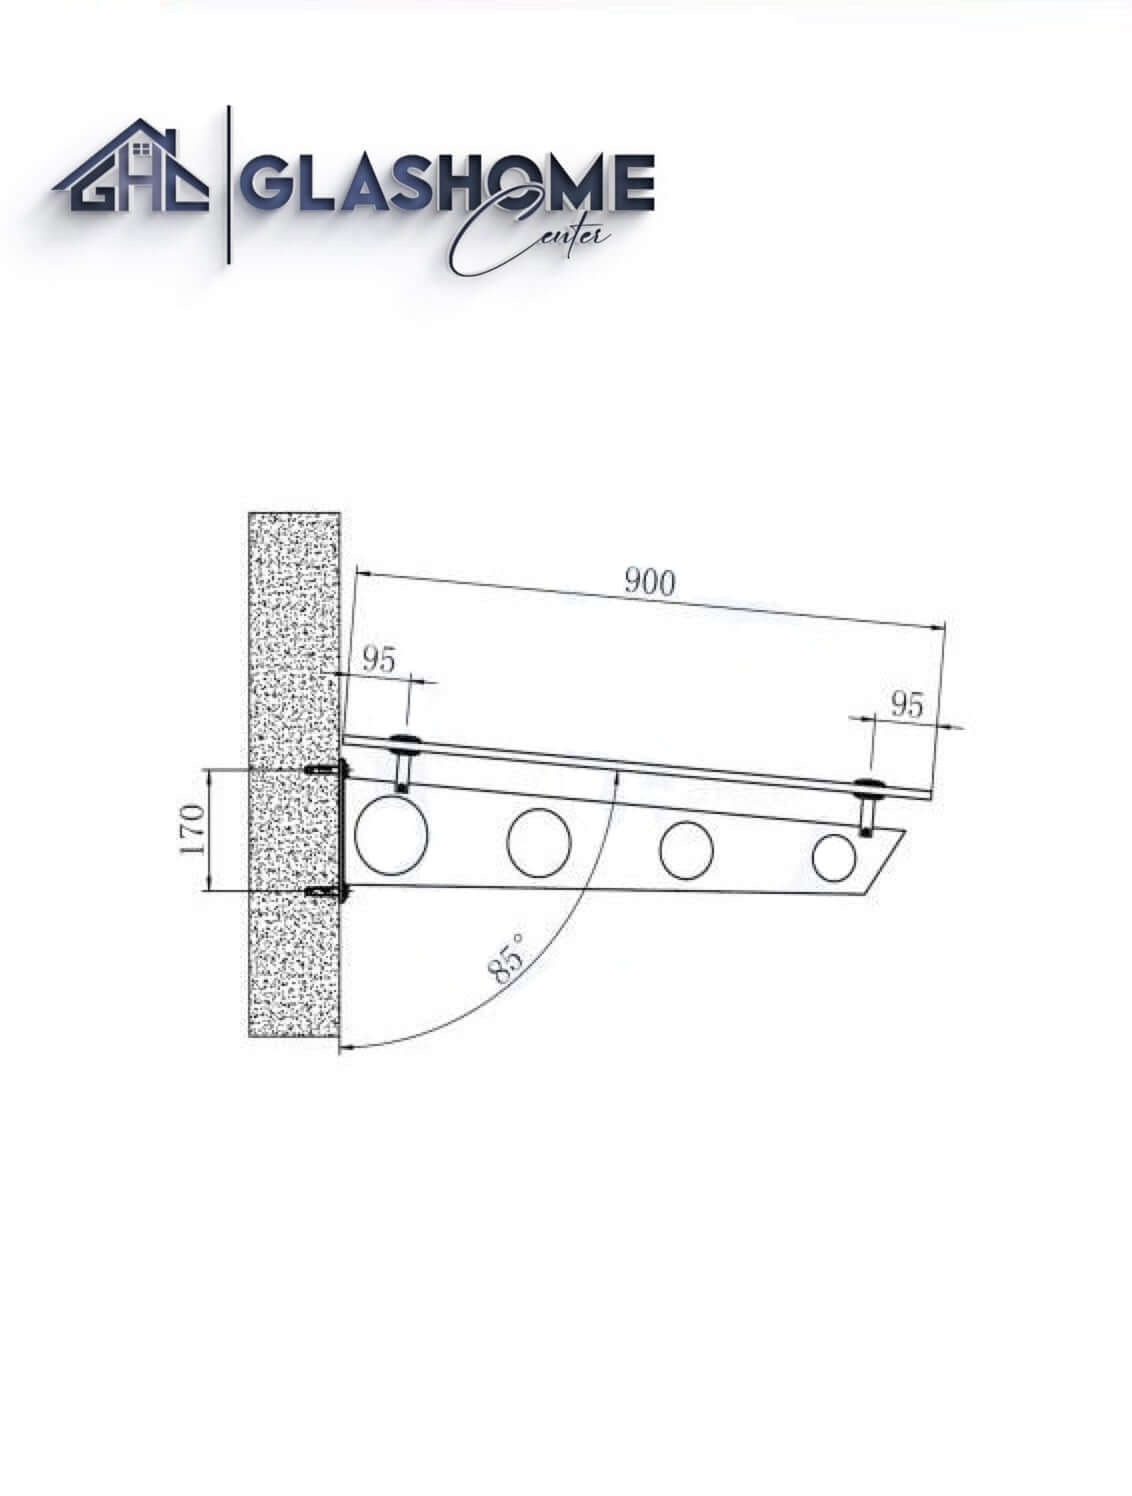 GlasHomeCenter - Glasvordach - Grauglas - 150x90cm - 13.1mm VSG - incl. 2 varianti Edelstahlhalterungen nere "Stoccolma"